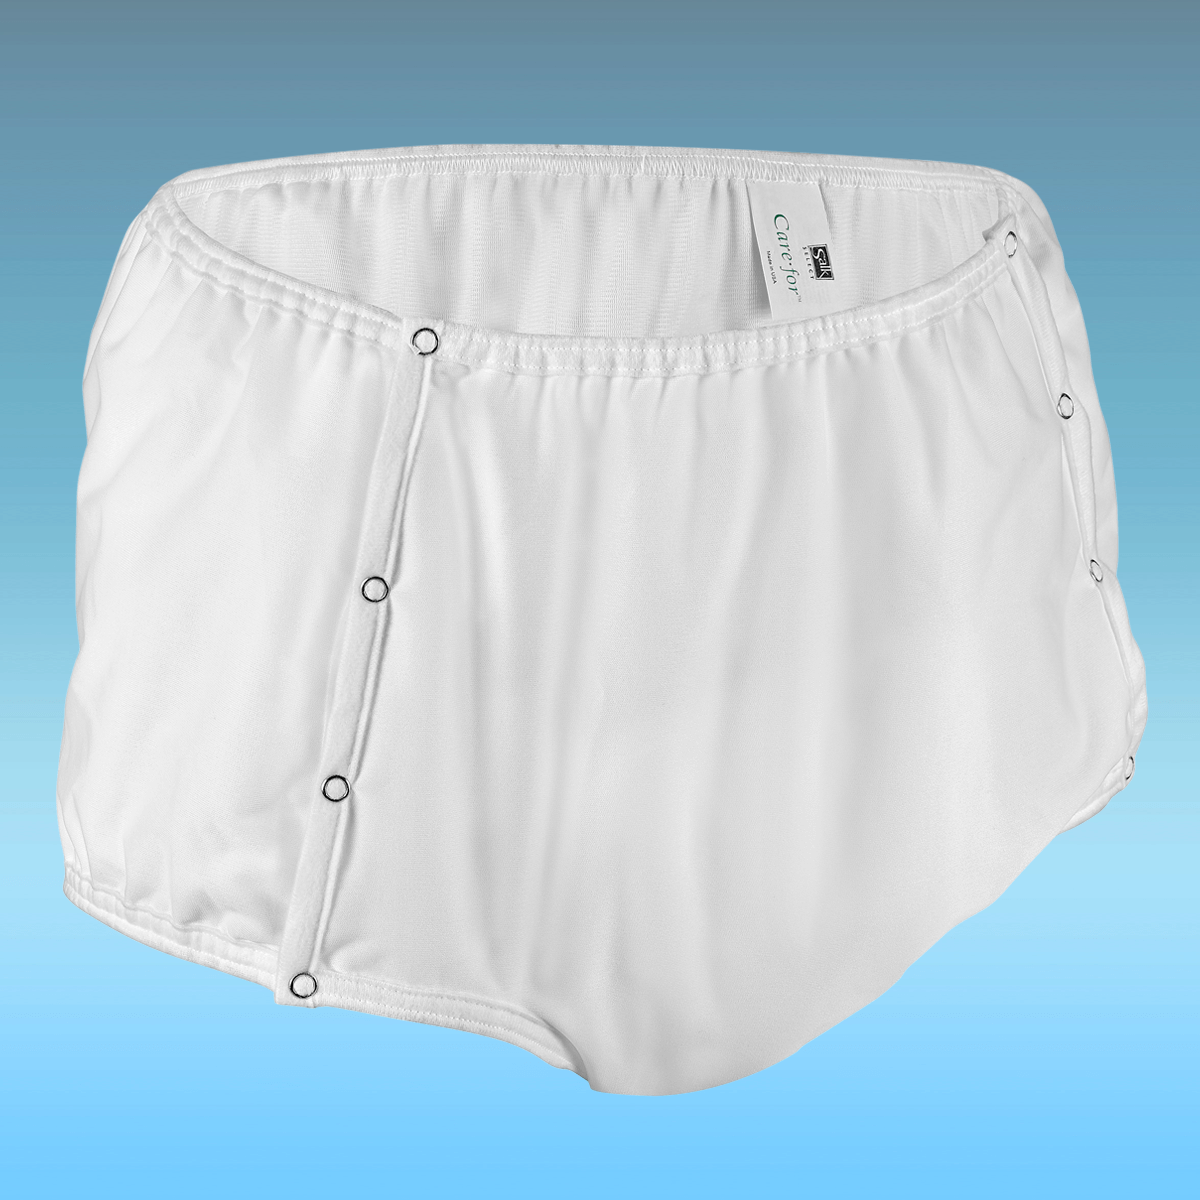  Waterproof Underwear Women